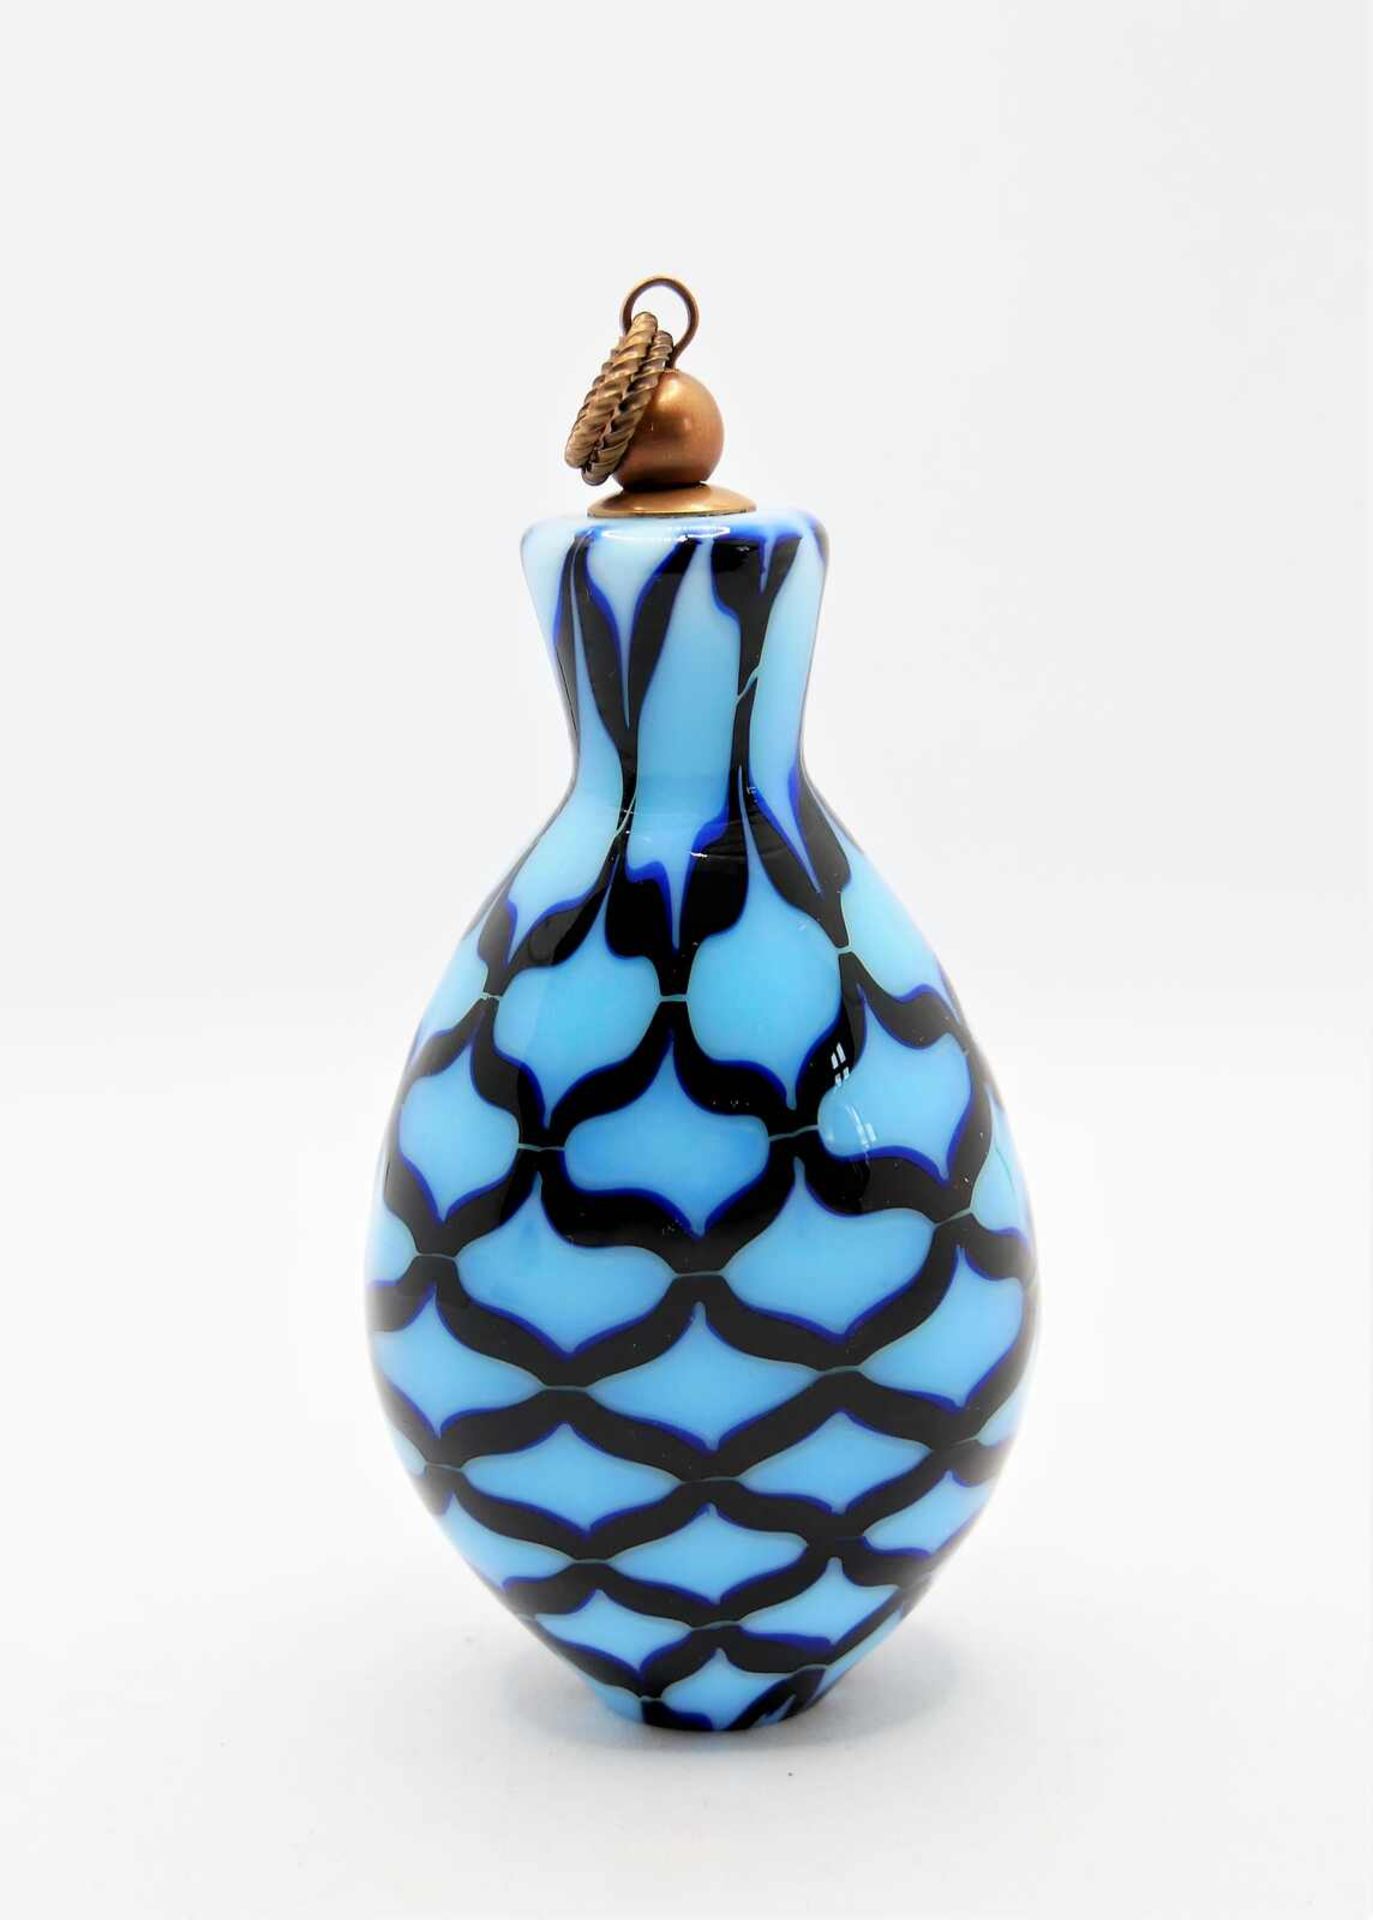 Schnupftabakflasche Glas aus Sammlung, Bixl, hellblau/dunkelblau/schwarz, mit Stöpsel. Bayrischer - Image 2 of 2